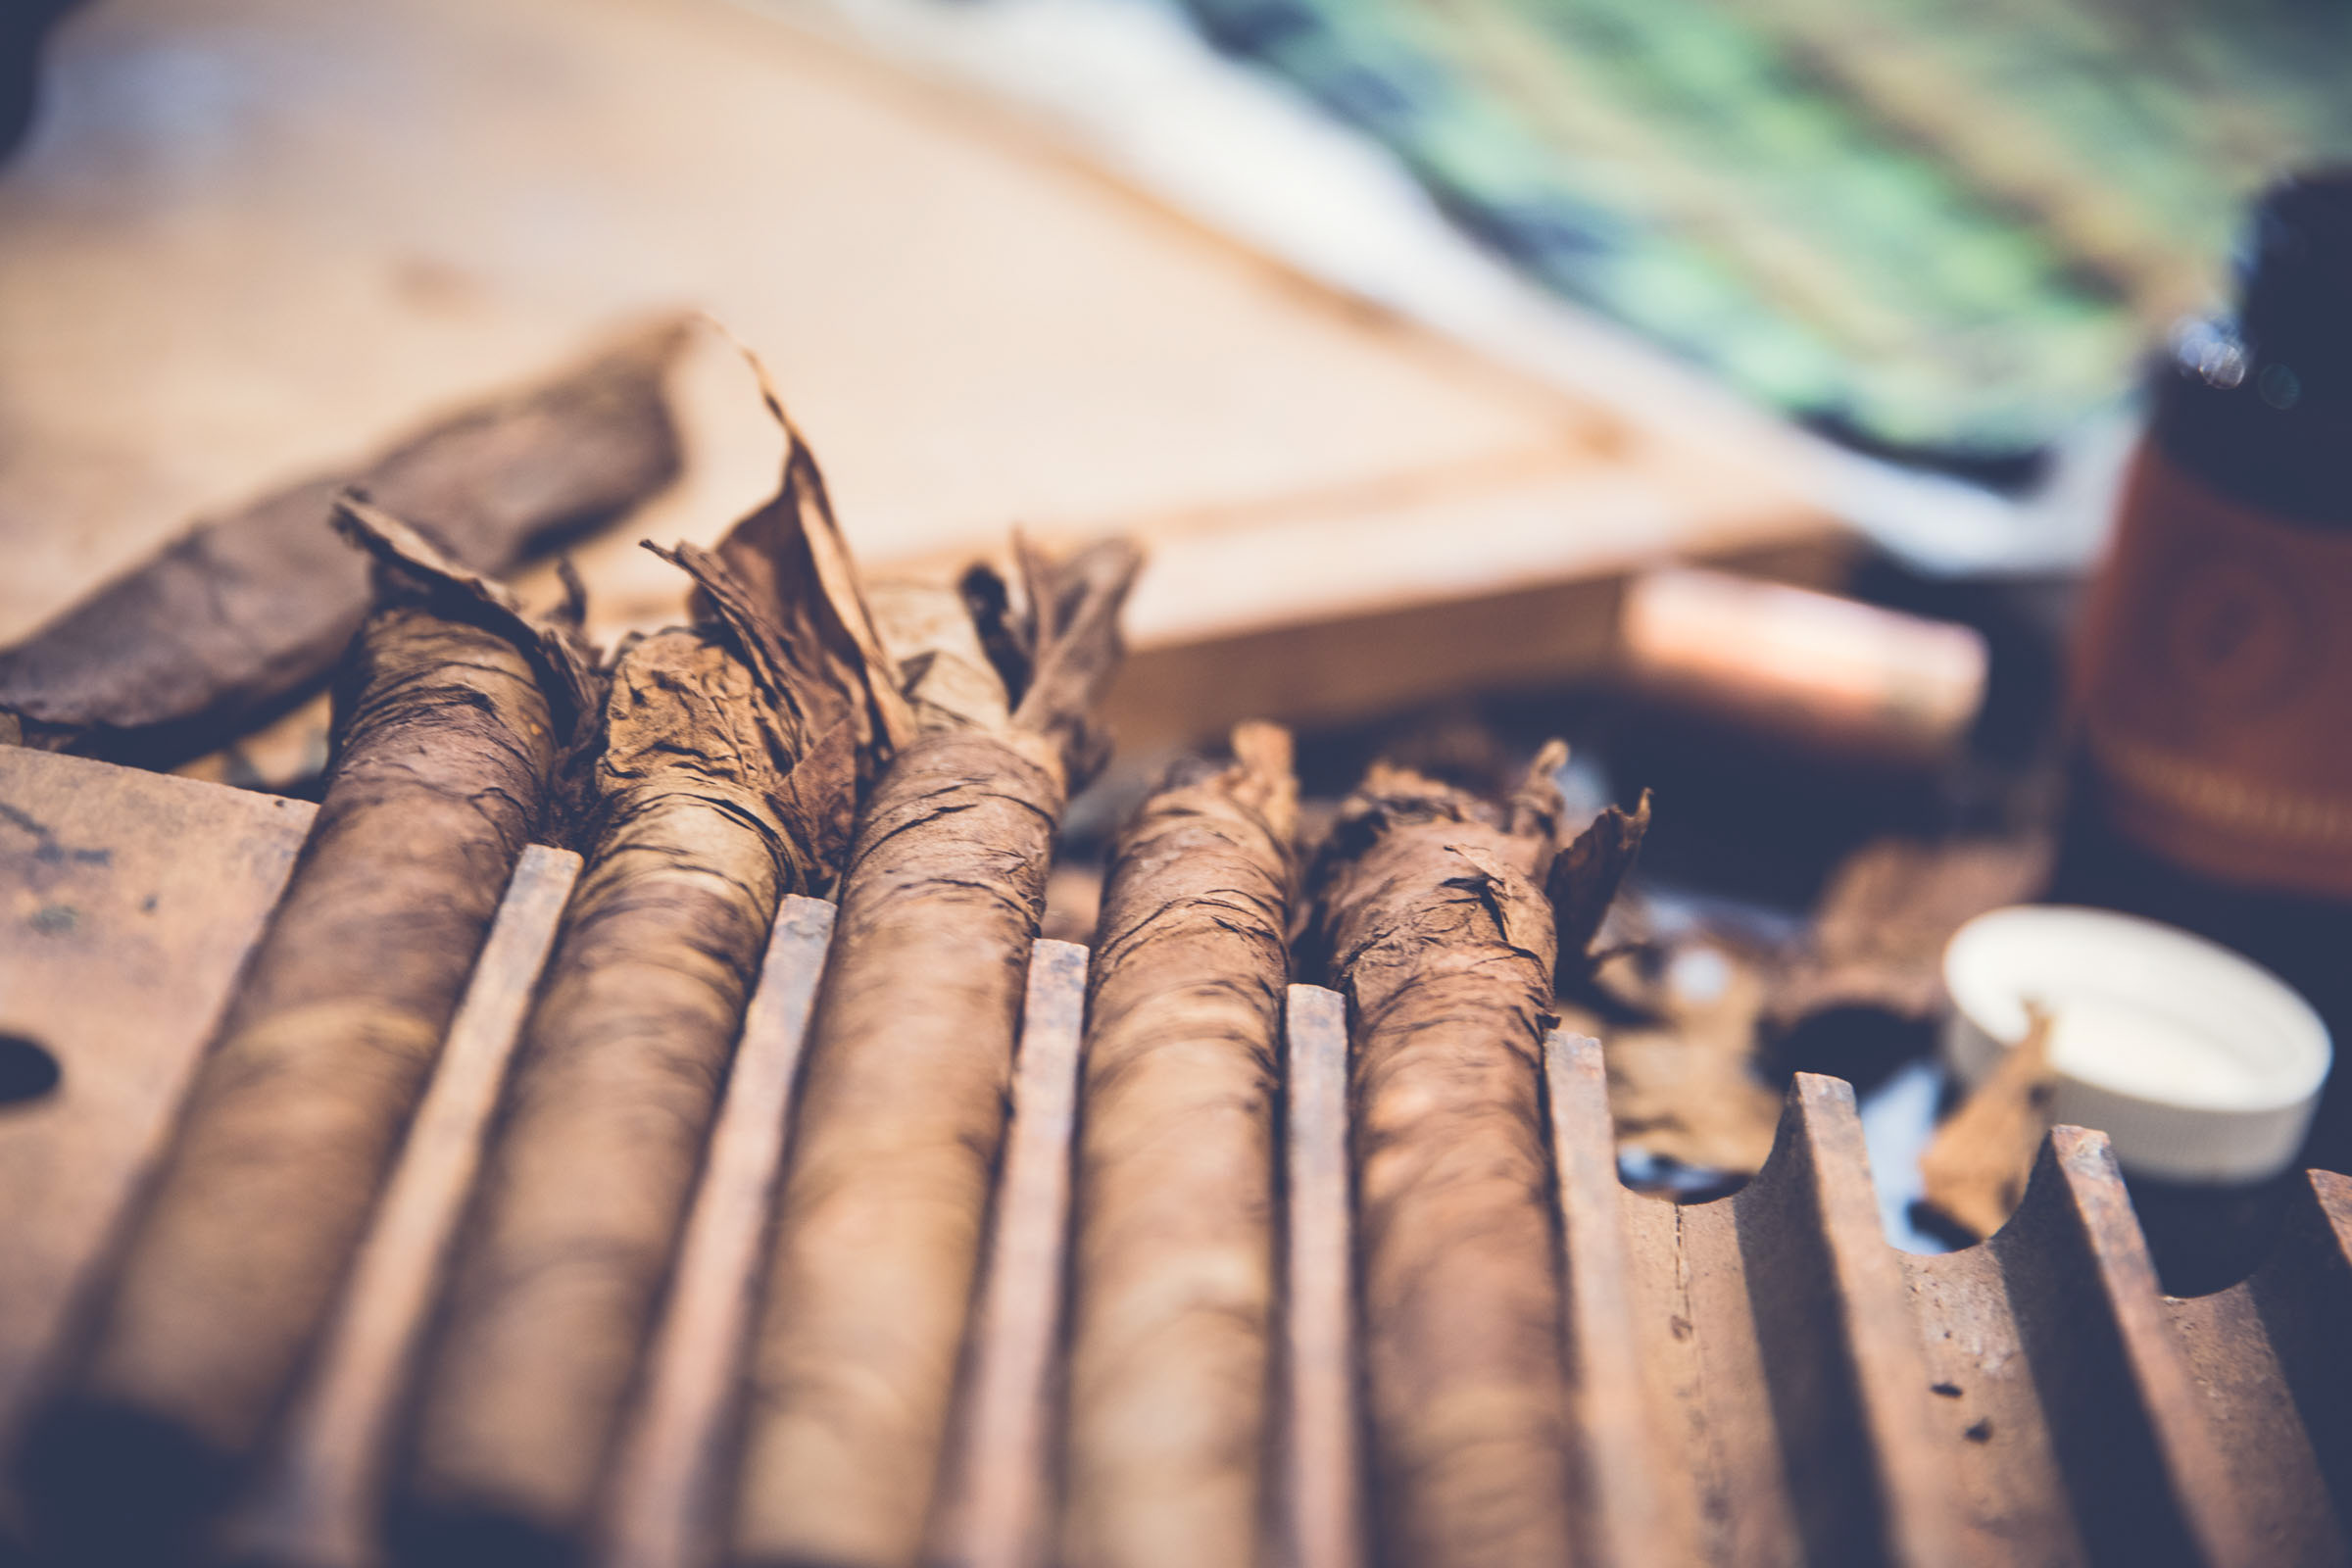 Zigarrendreher | Zigarren | Drehen | Zigarrenroller | Zigarrenrollerin | Zigarrendreherin | Mieten | Anfragen | Trocadero | Handgemacht | Zigarren | Shop | Geschenk | kaufen | Robusto | Corona | Torpedo | Banderole | Tabak